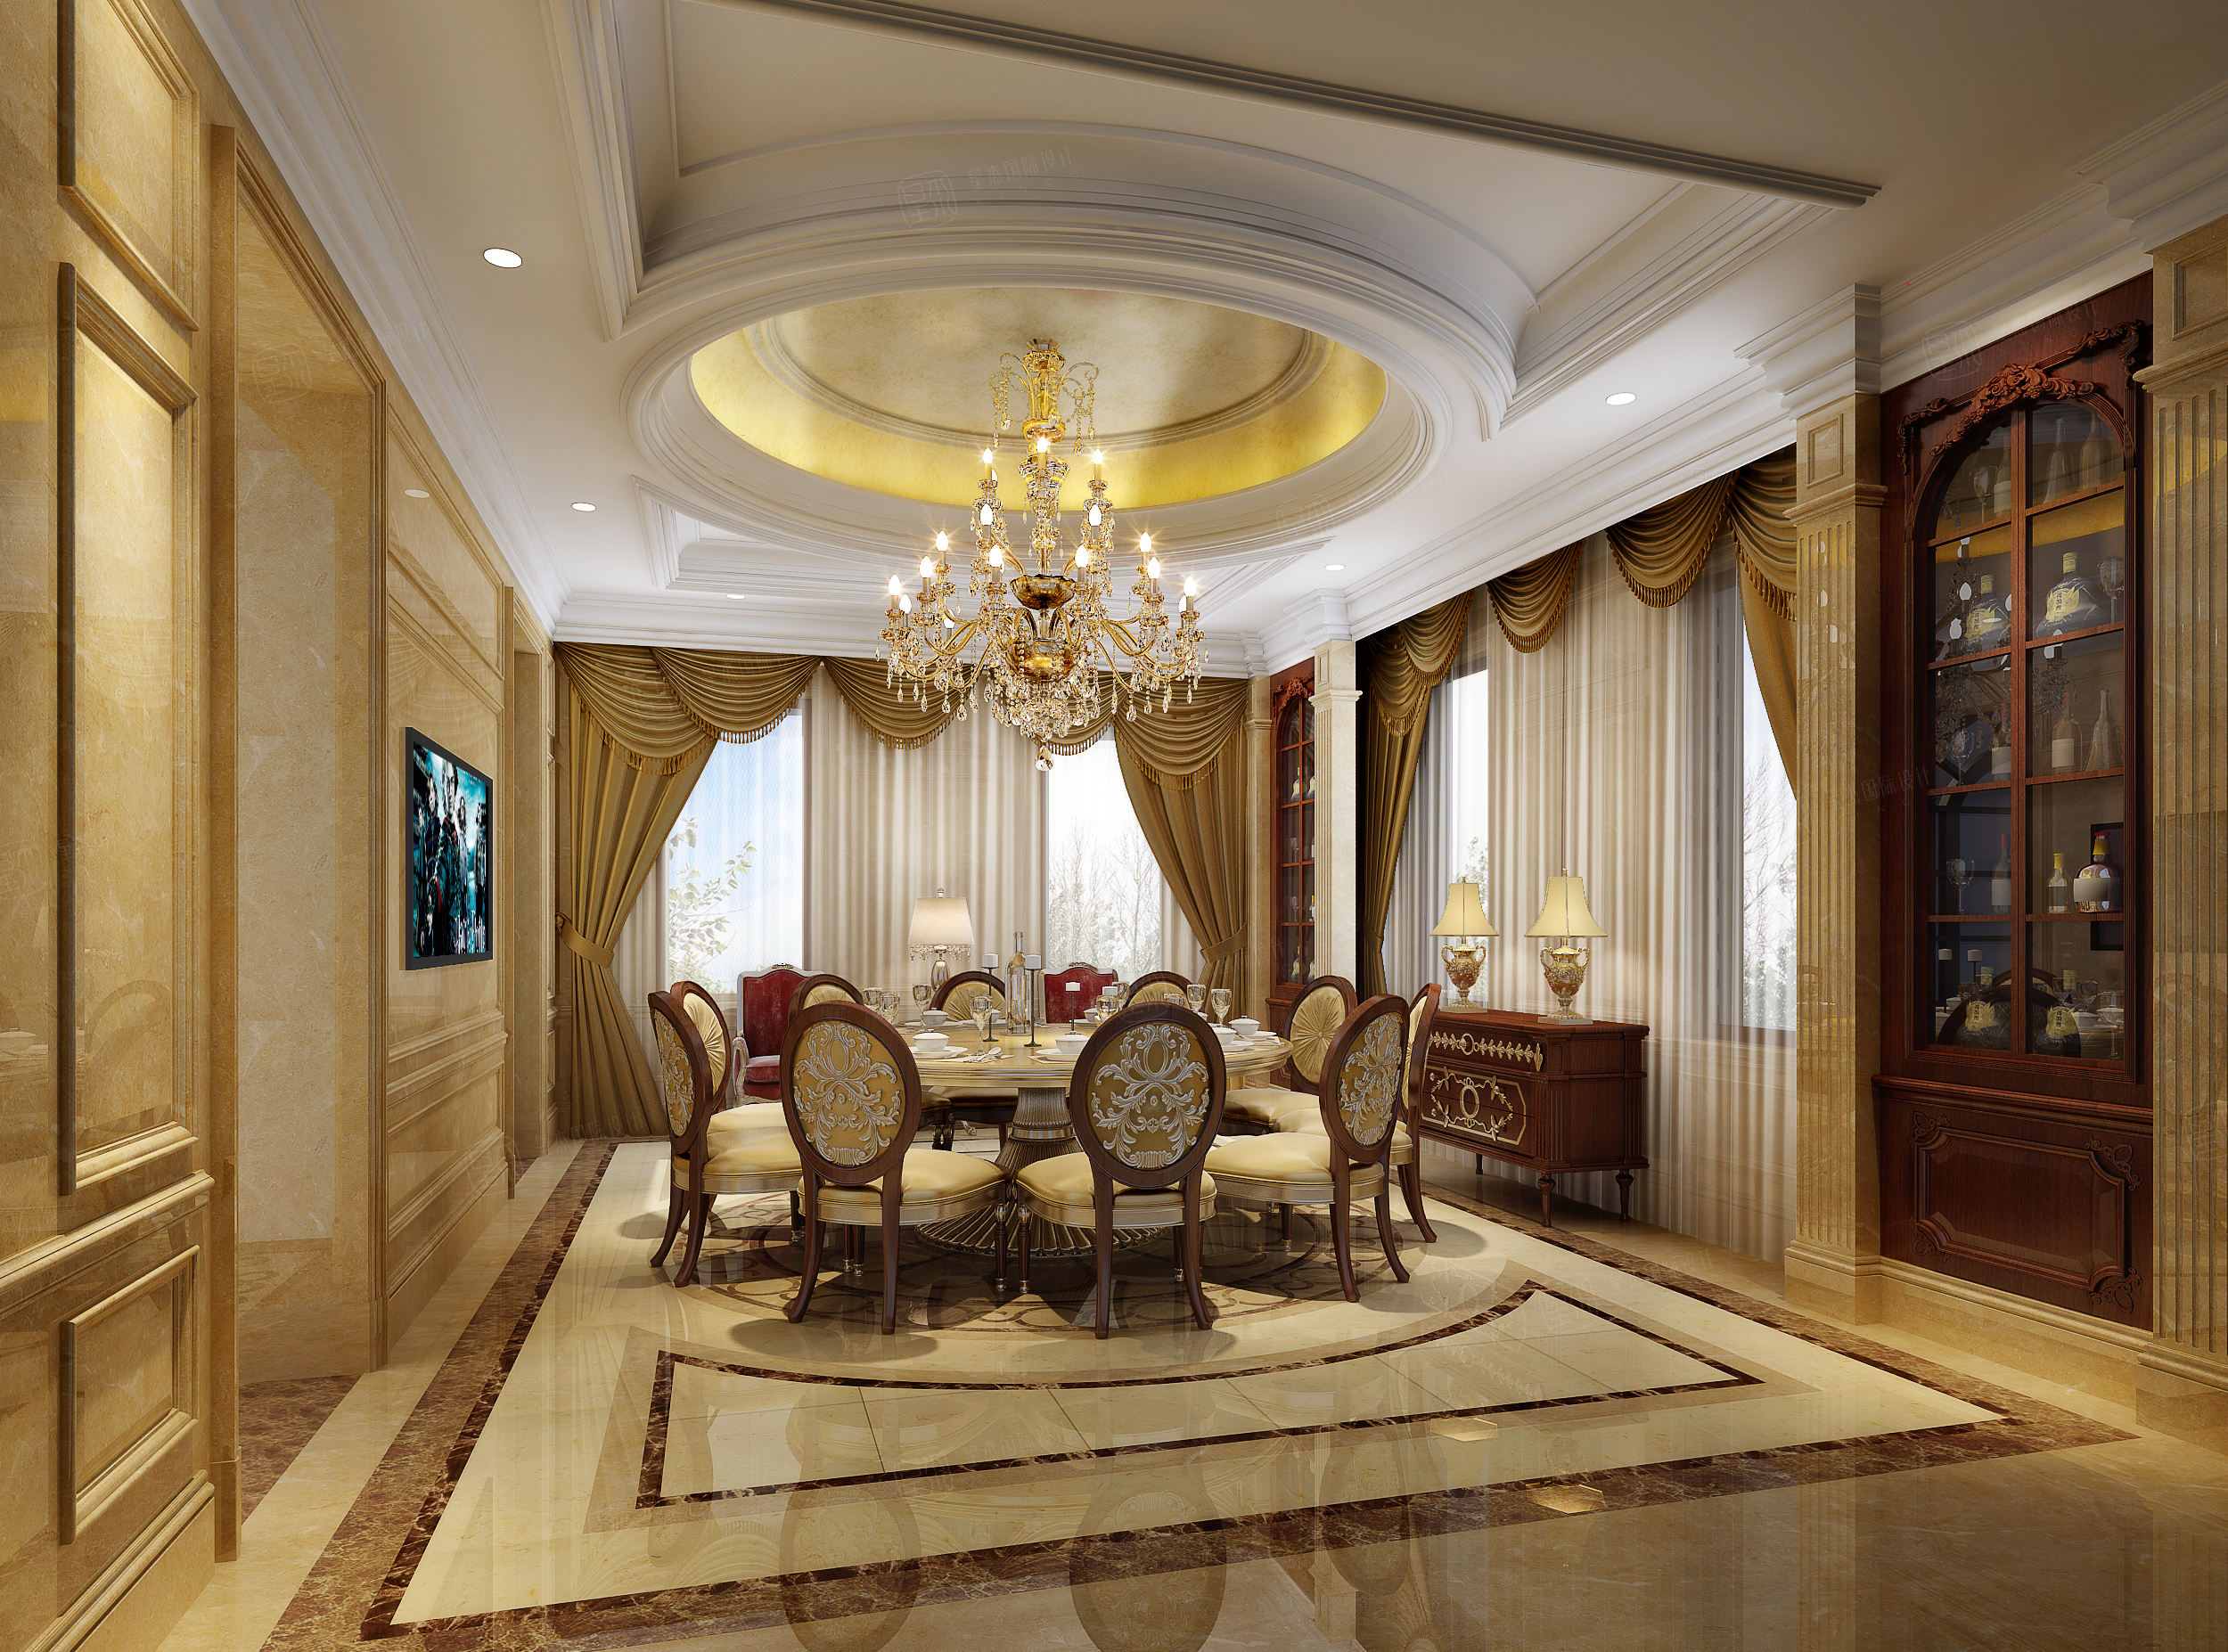 欧式古典 - 欧式风格三室一厅装修效果图 - 王茜子设计效果图 - 每平每屋·设计家